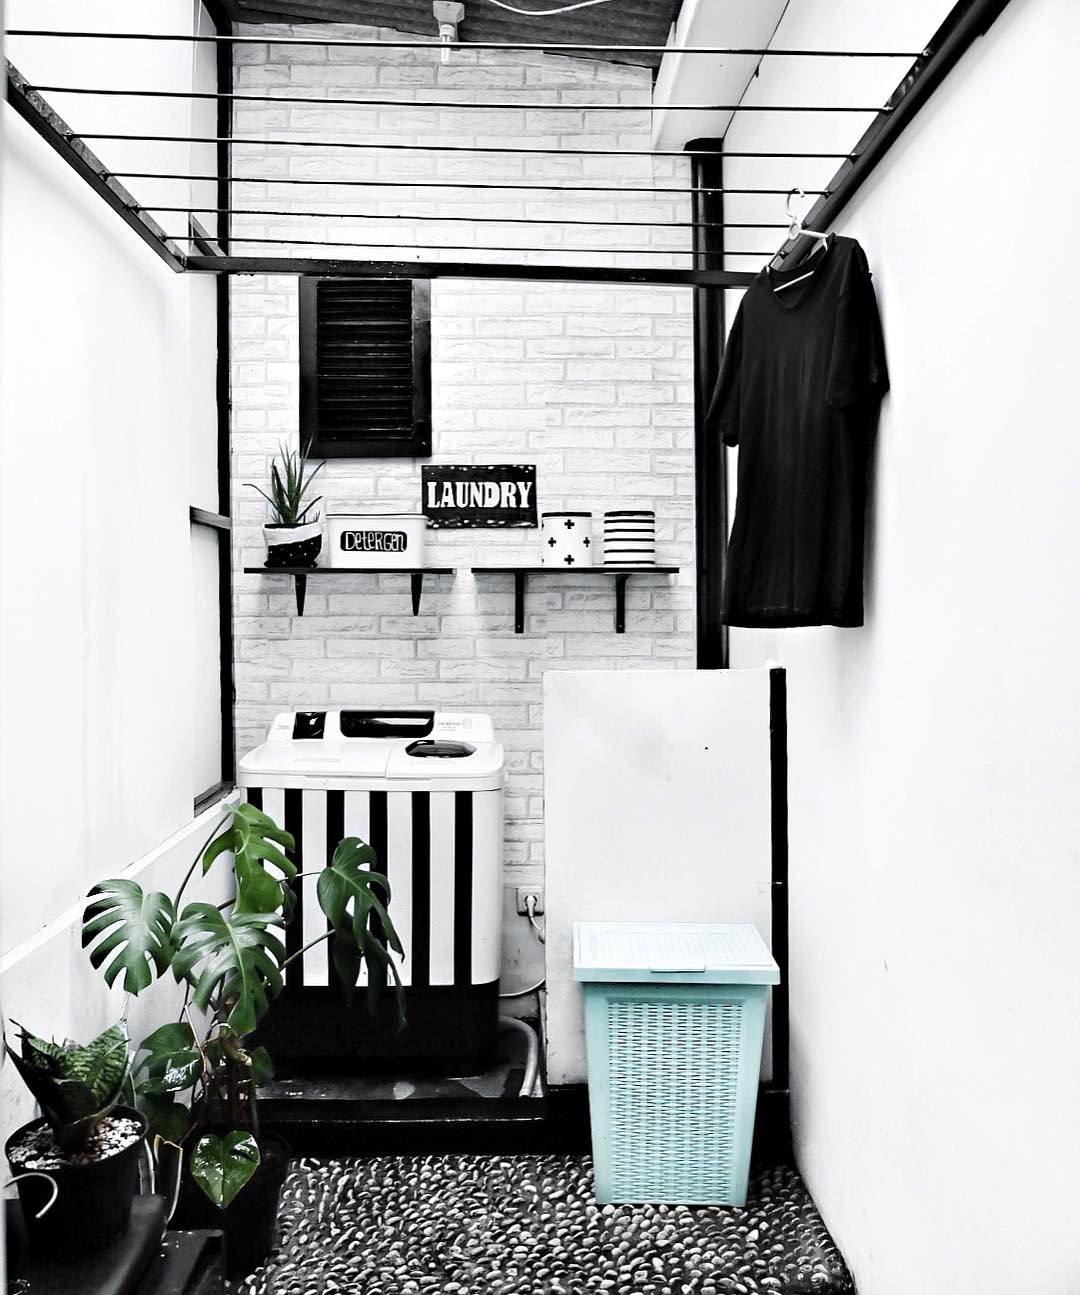 Rumah Shabby Chic Inspirasi Tempat Cuci Baju Yang Dilengkapi Dengan Jemuran Baju Homeshabbycom Design Home Plans